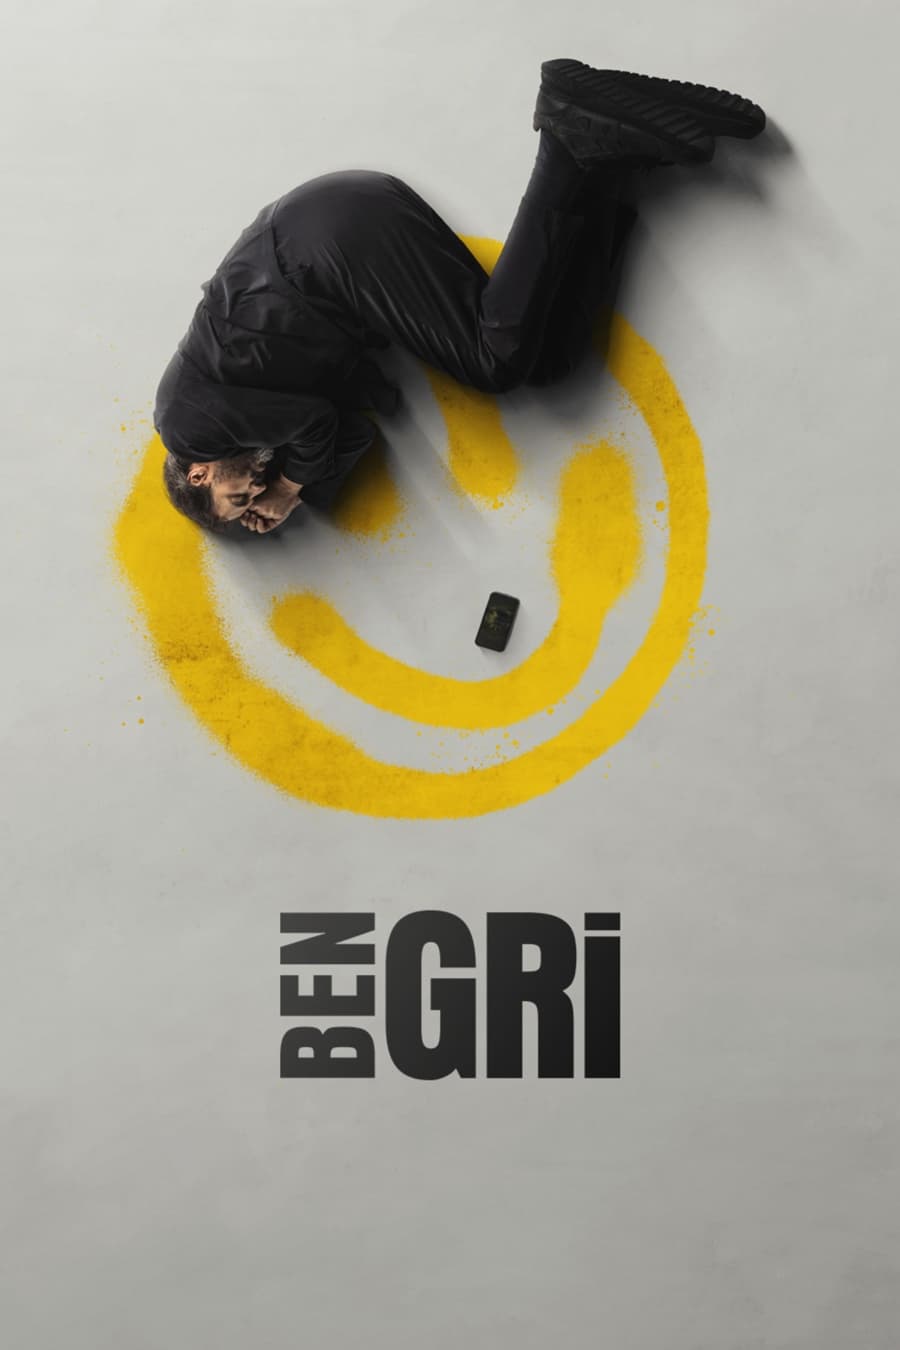 TV ratings for Ben Gri in Spain. Disney+ TV series